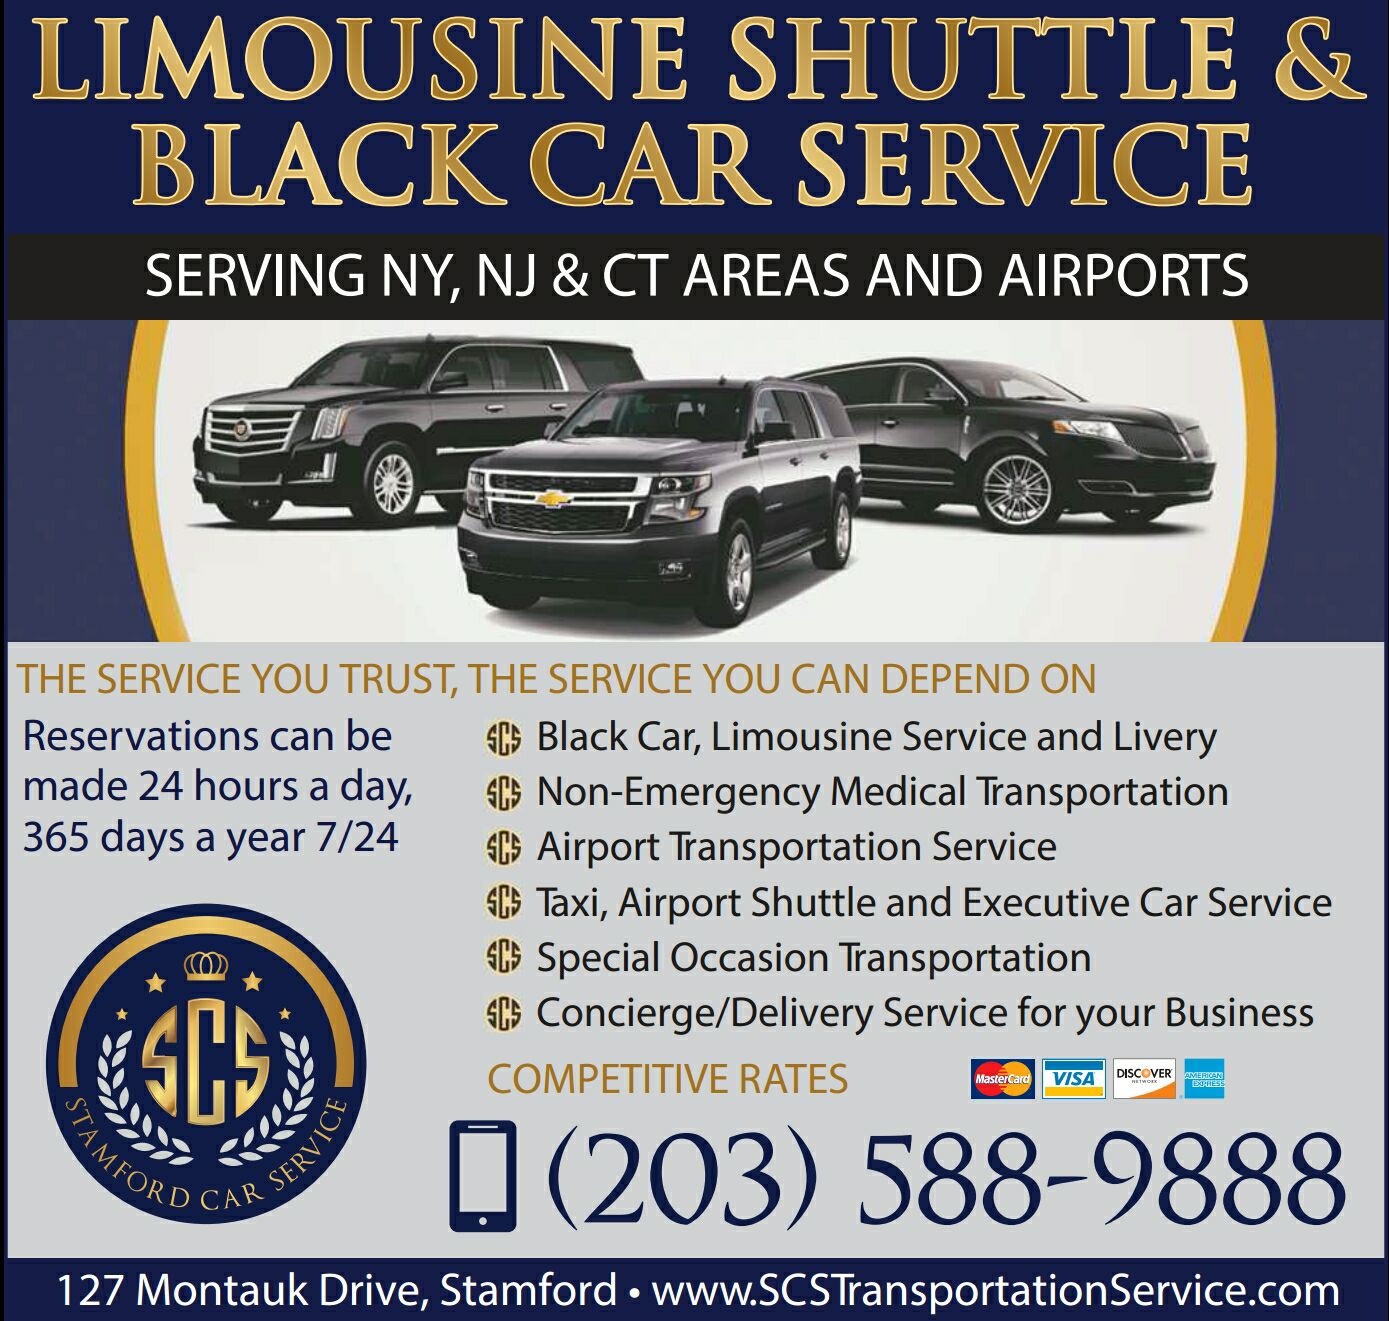 SCS Transportation & Limousine